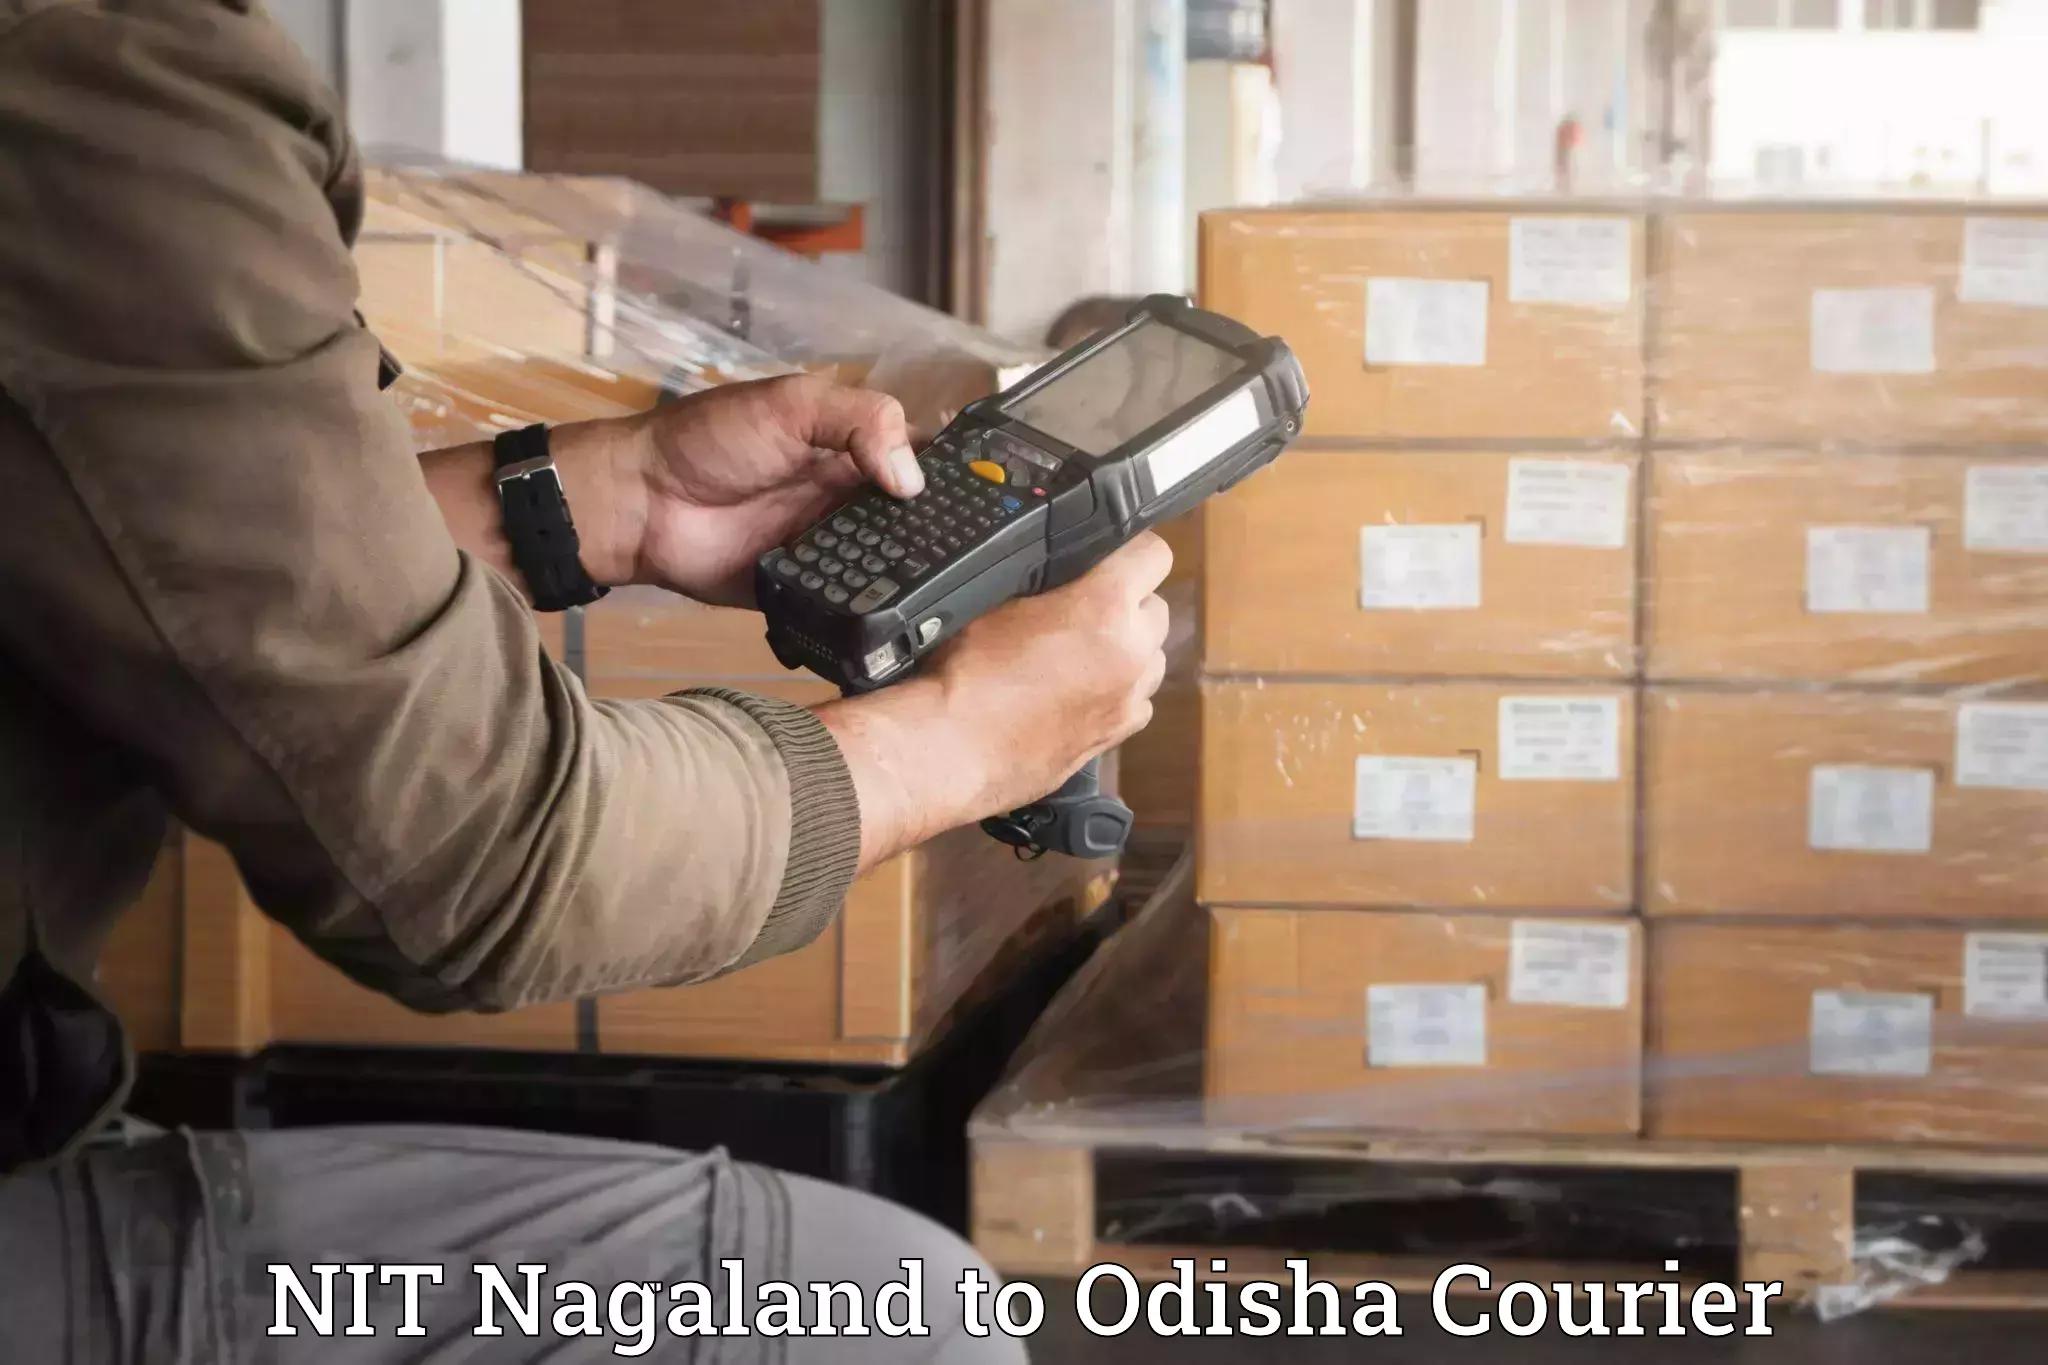 Home shifting experts NIT Nagaland to Nilagiri